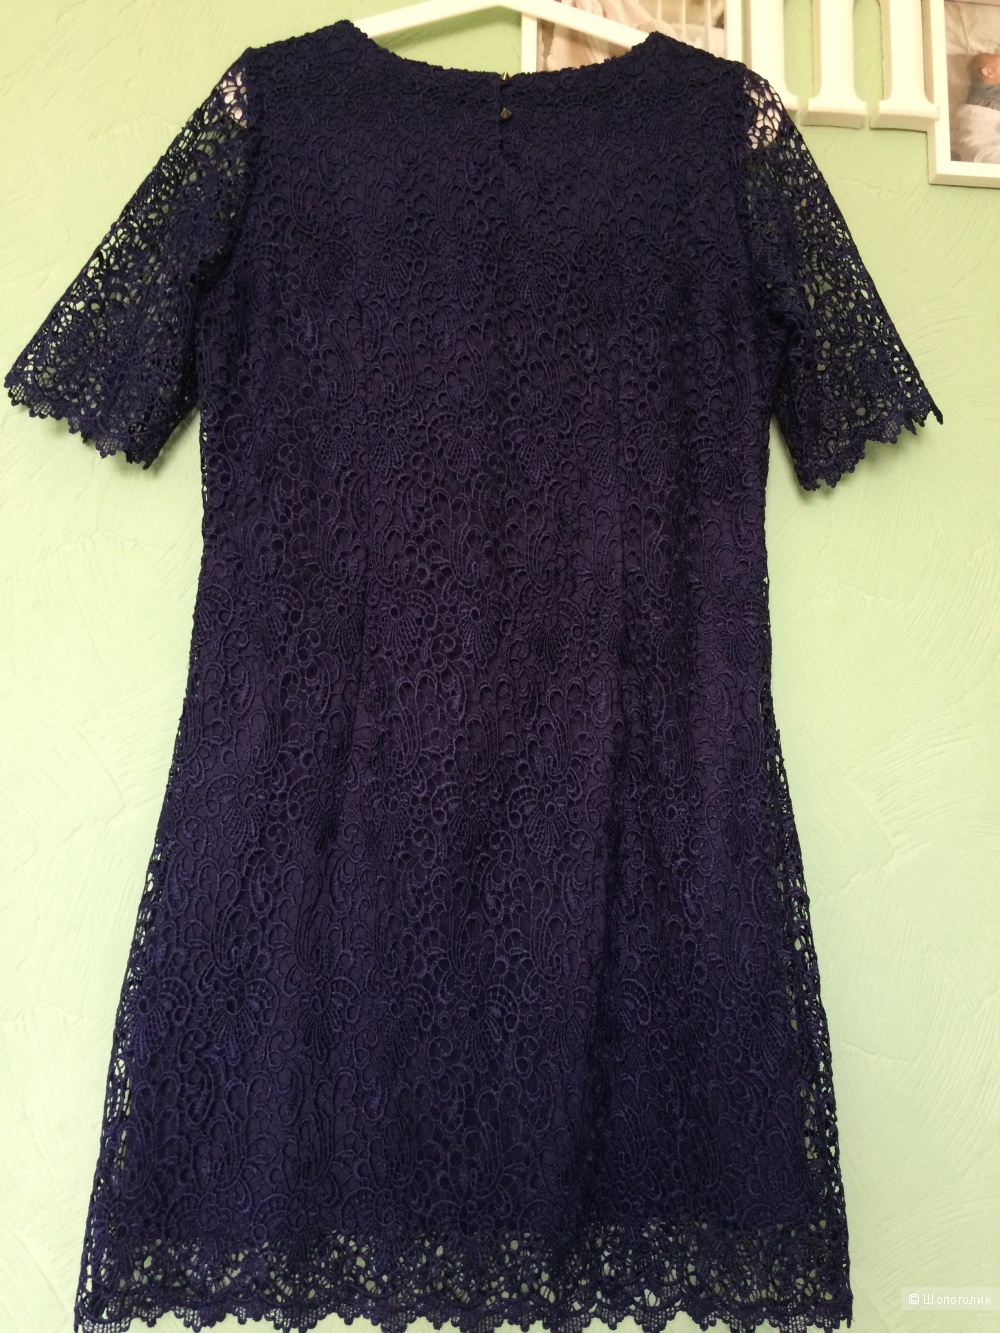 Платье La Redoute 46-48 размер